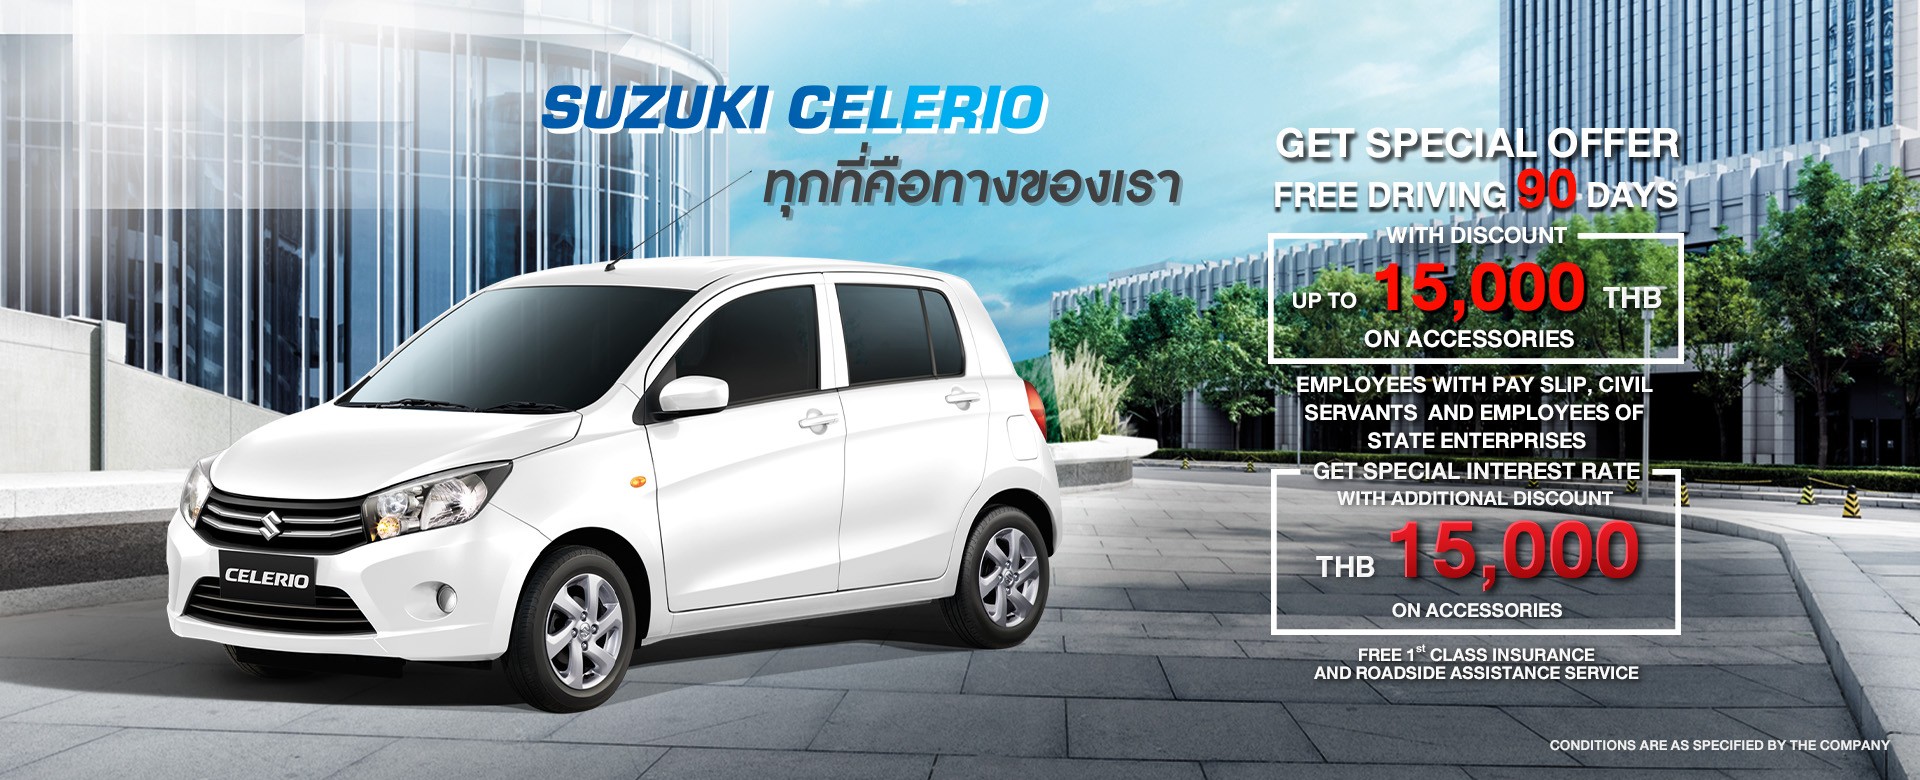 Suzuki CELERIO Promotion